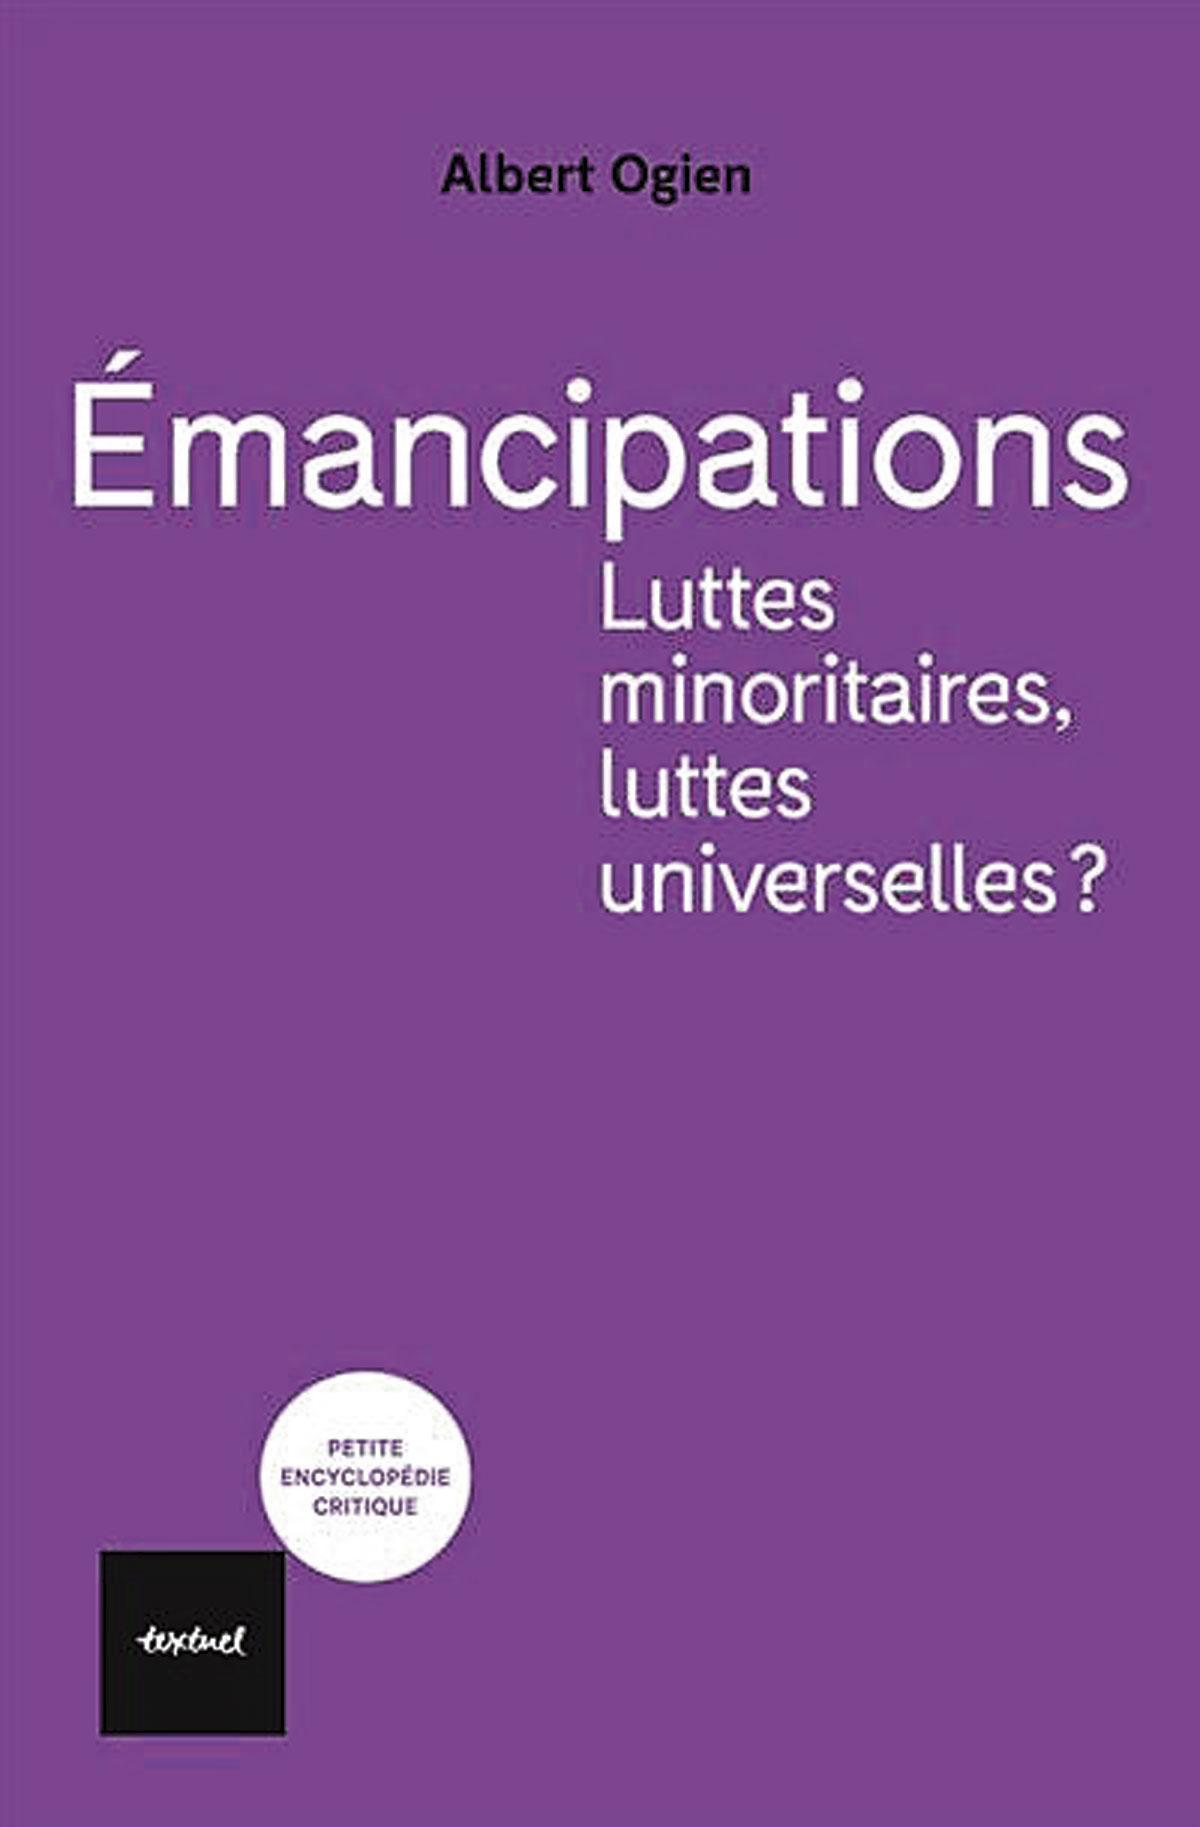 (1) Emancipations. Luttes minoritaires, luttes universelles? , par Albert Ogien, Textuel, 160 p.